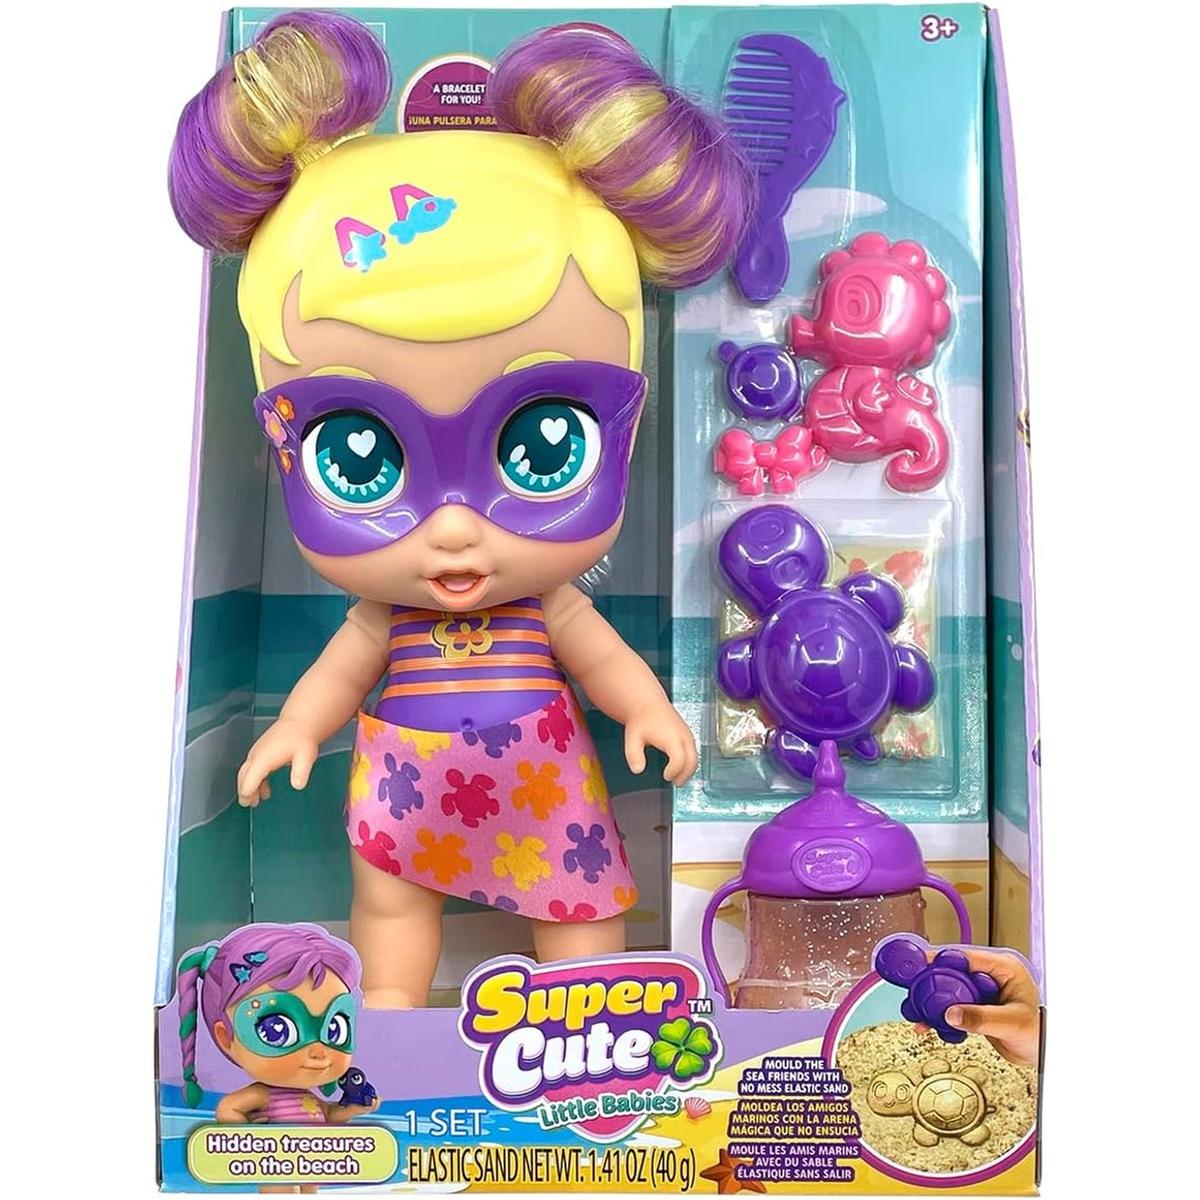 Bizak - Super Cute Sofi brinquedo multicolorido de missão praia ㅤ, Bonecas  TV